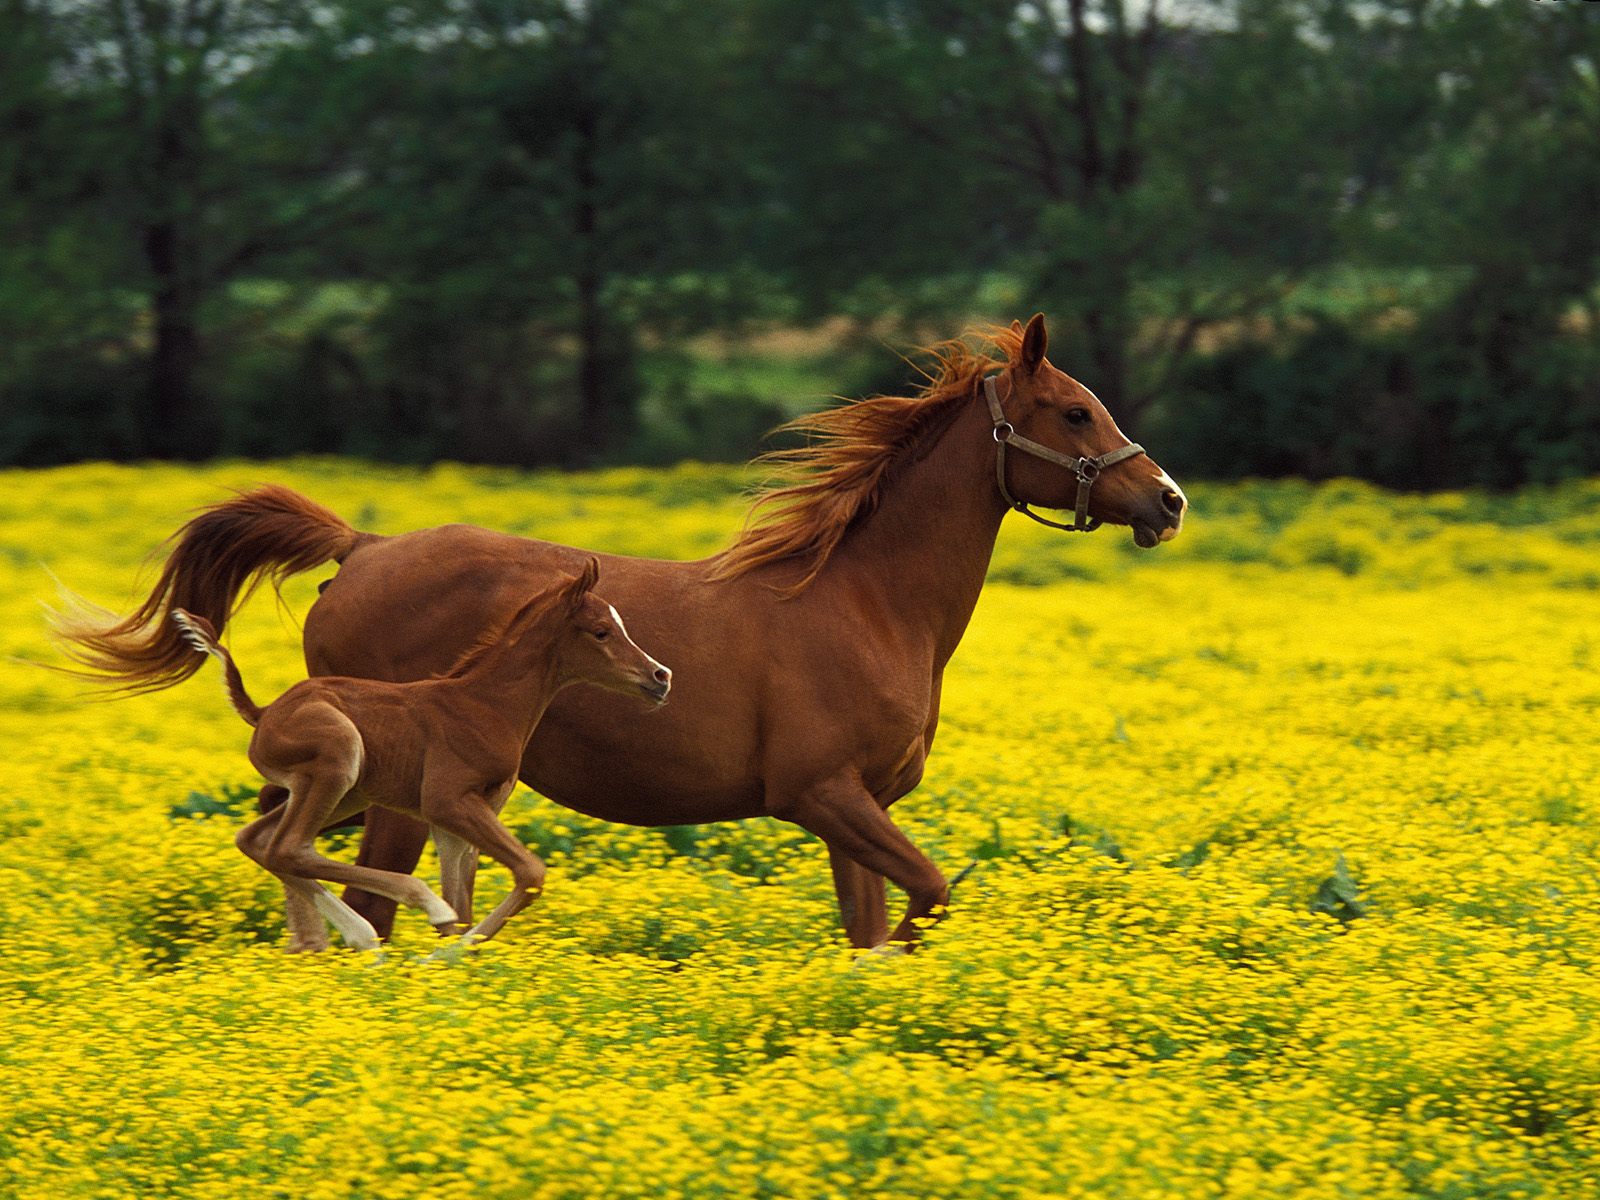 http://www.shareyourwallpaper.com/upload/wallpaper/animals/horses/horses_2c5132d5.jpg